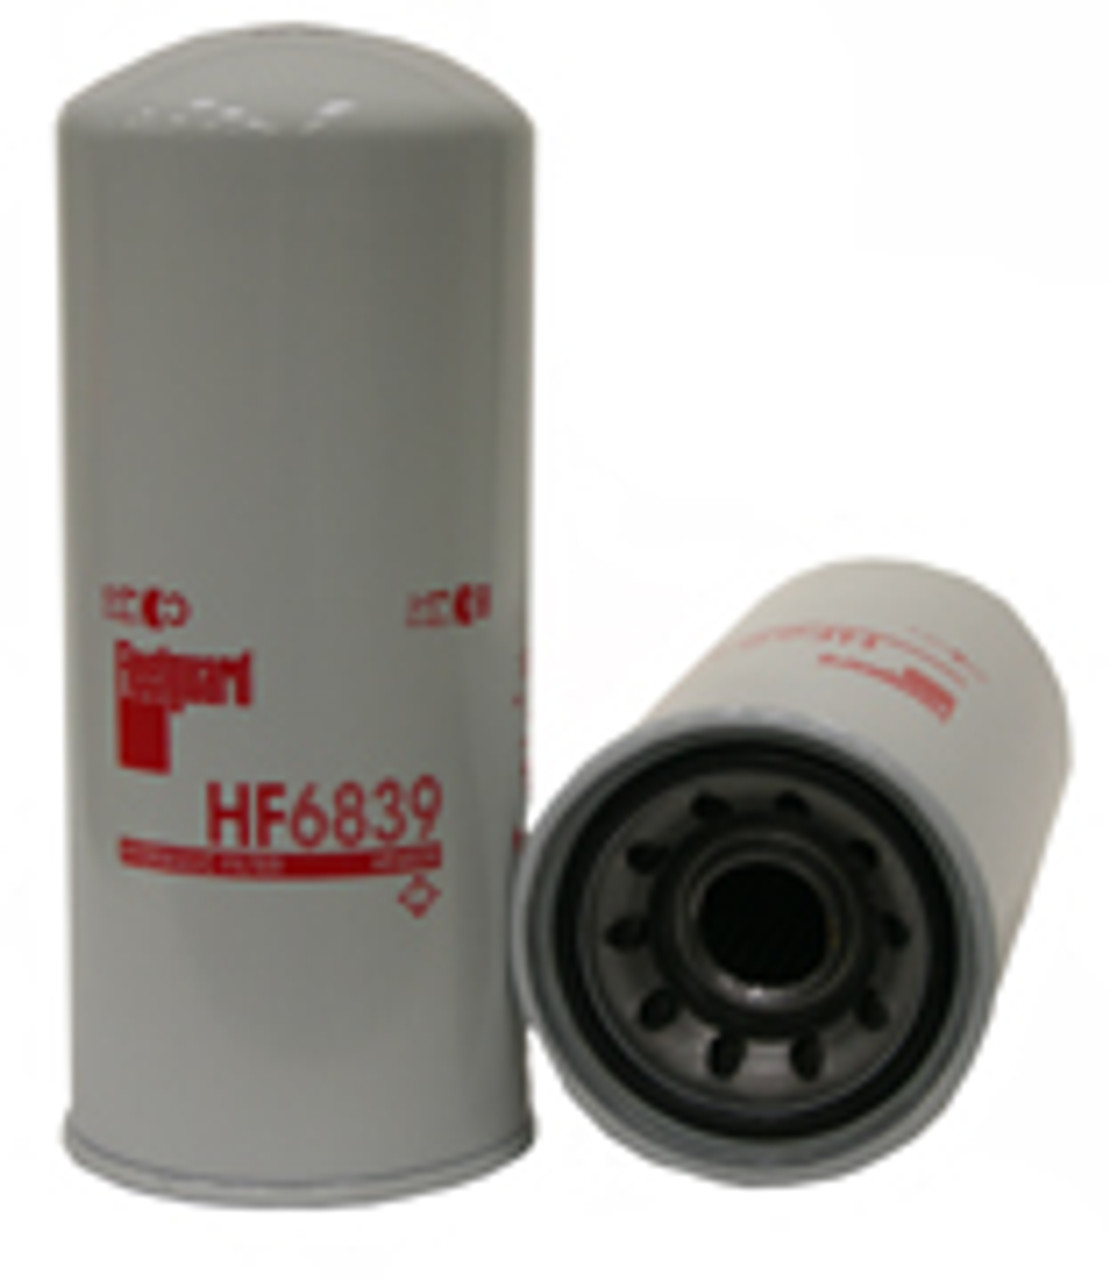 HF6839: Fleetguard Hydraulic Filter